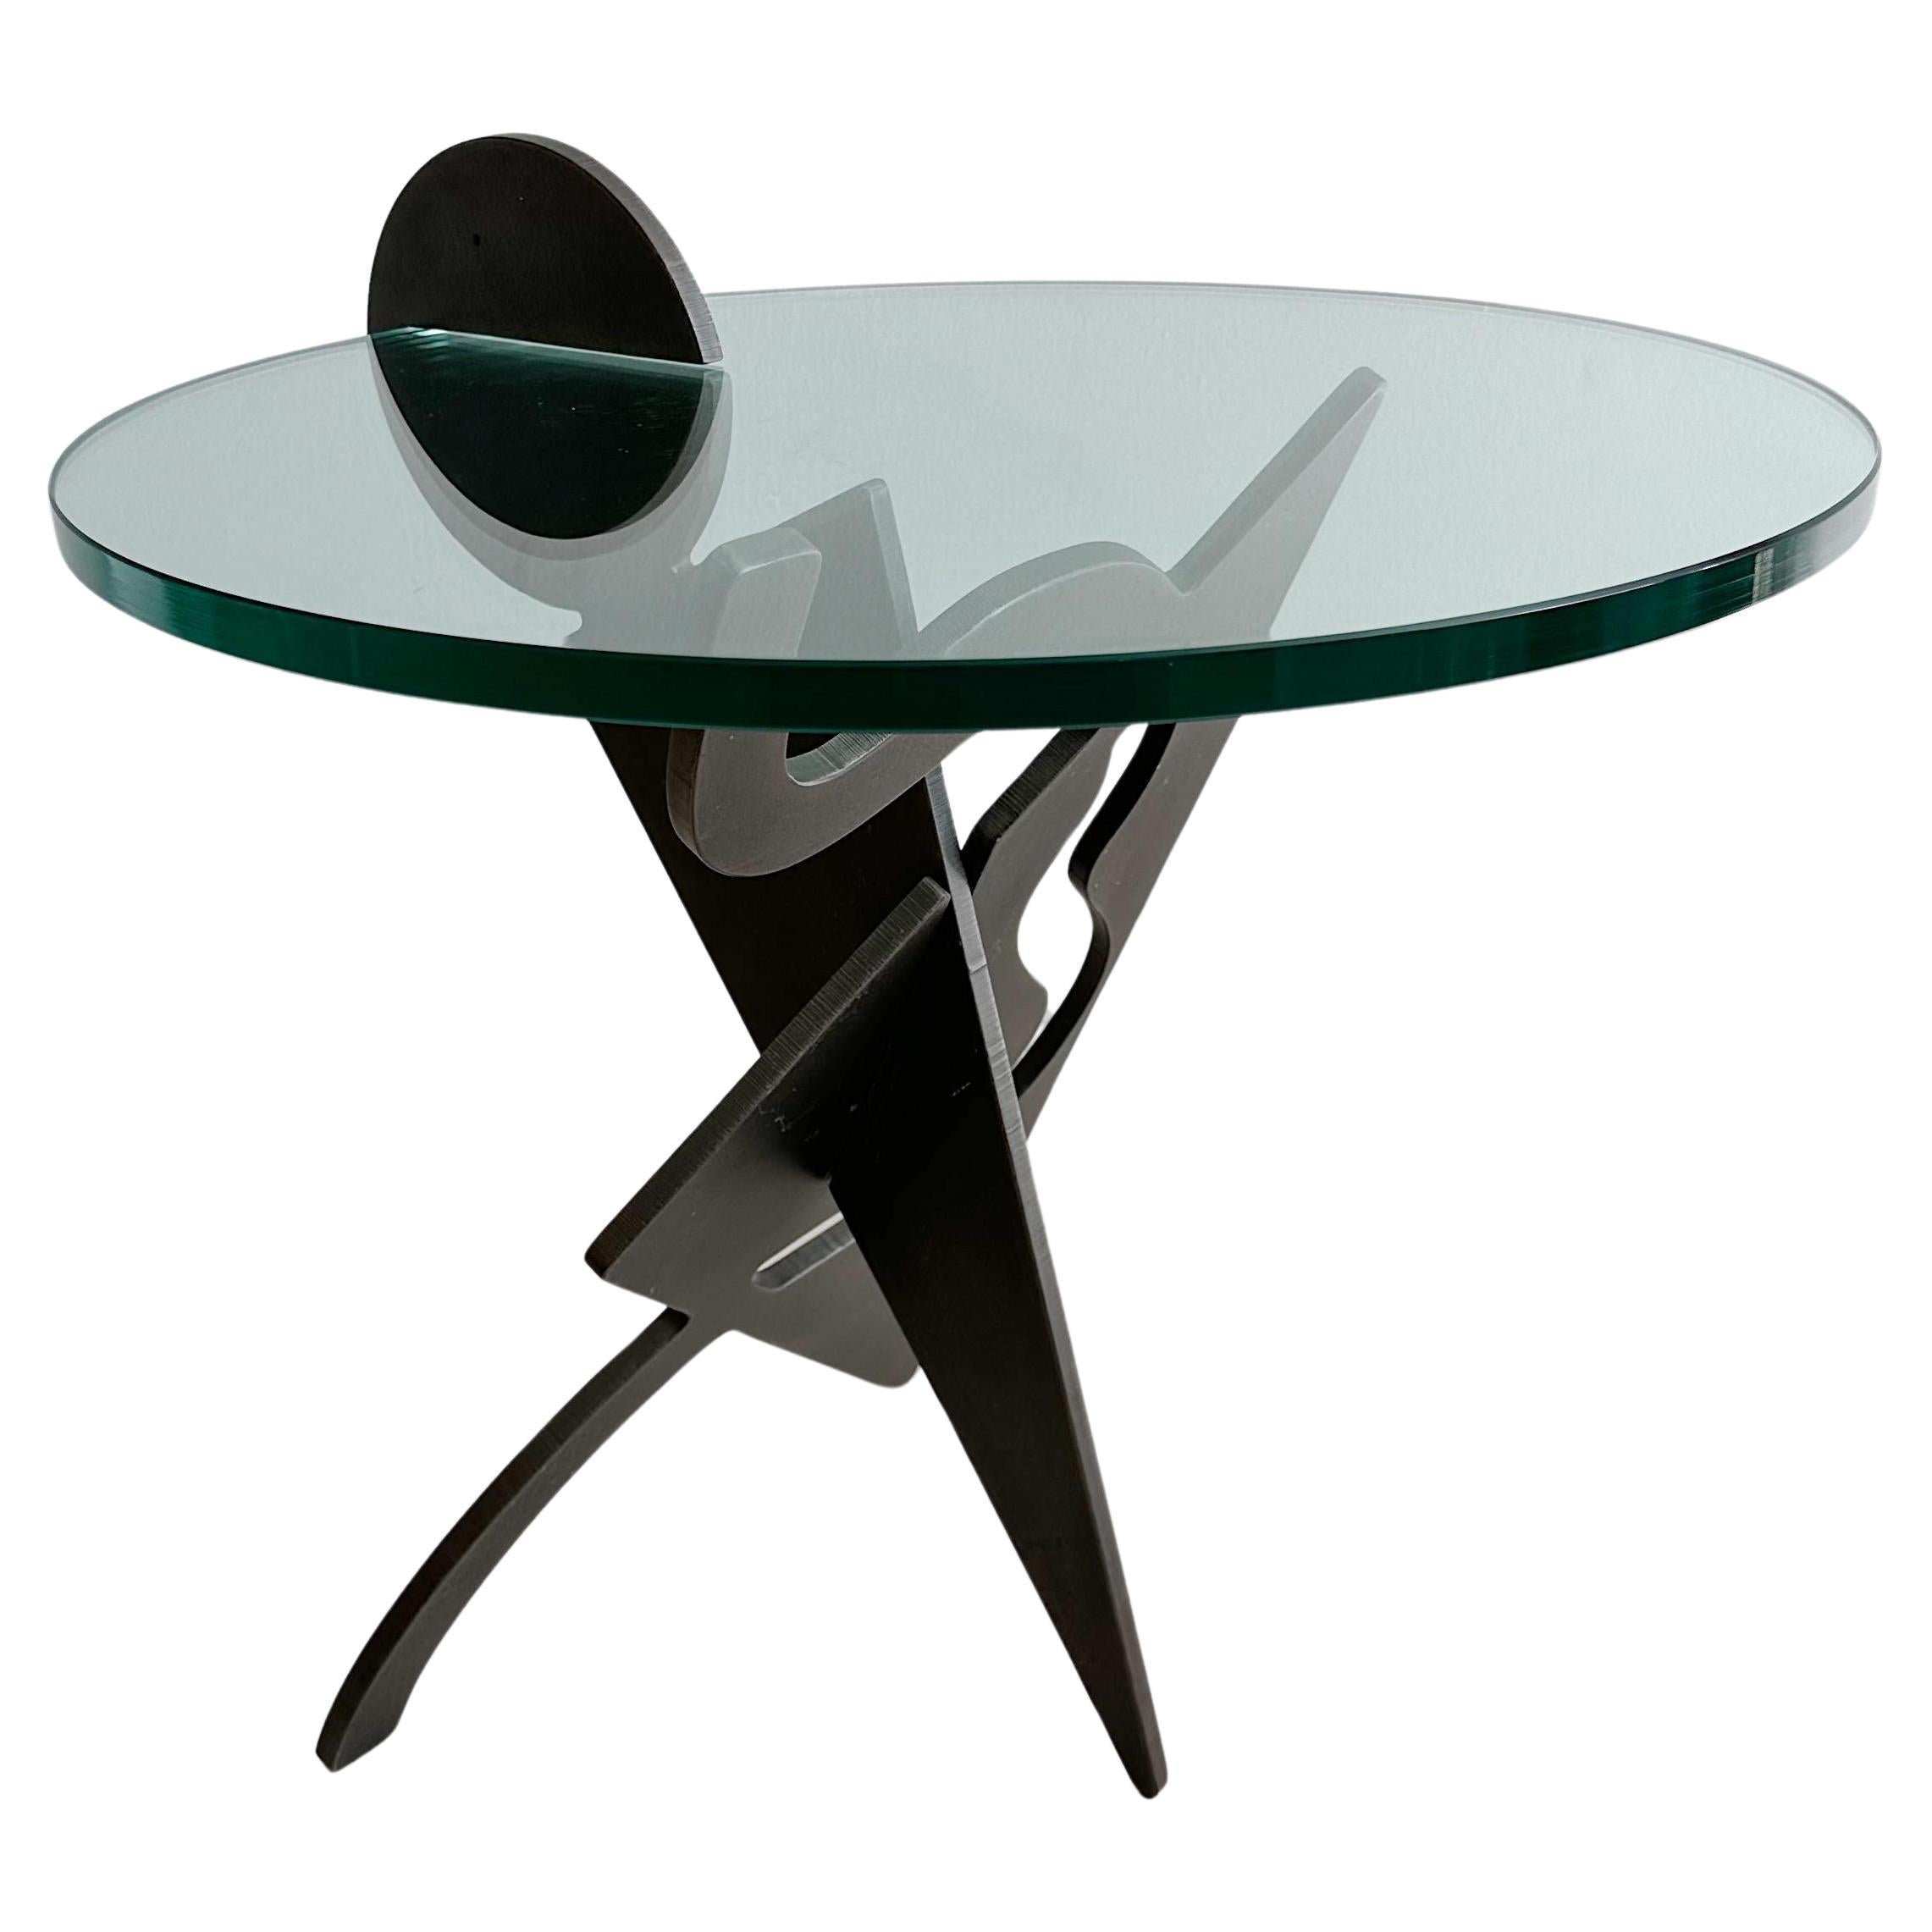 Pucci De Rossi (1947-2013) "Battista" Occasional Table